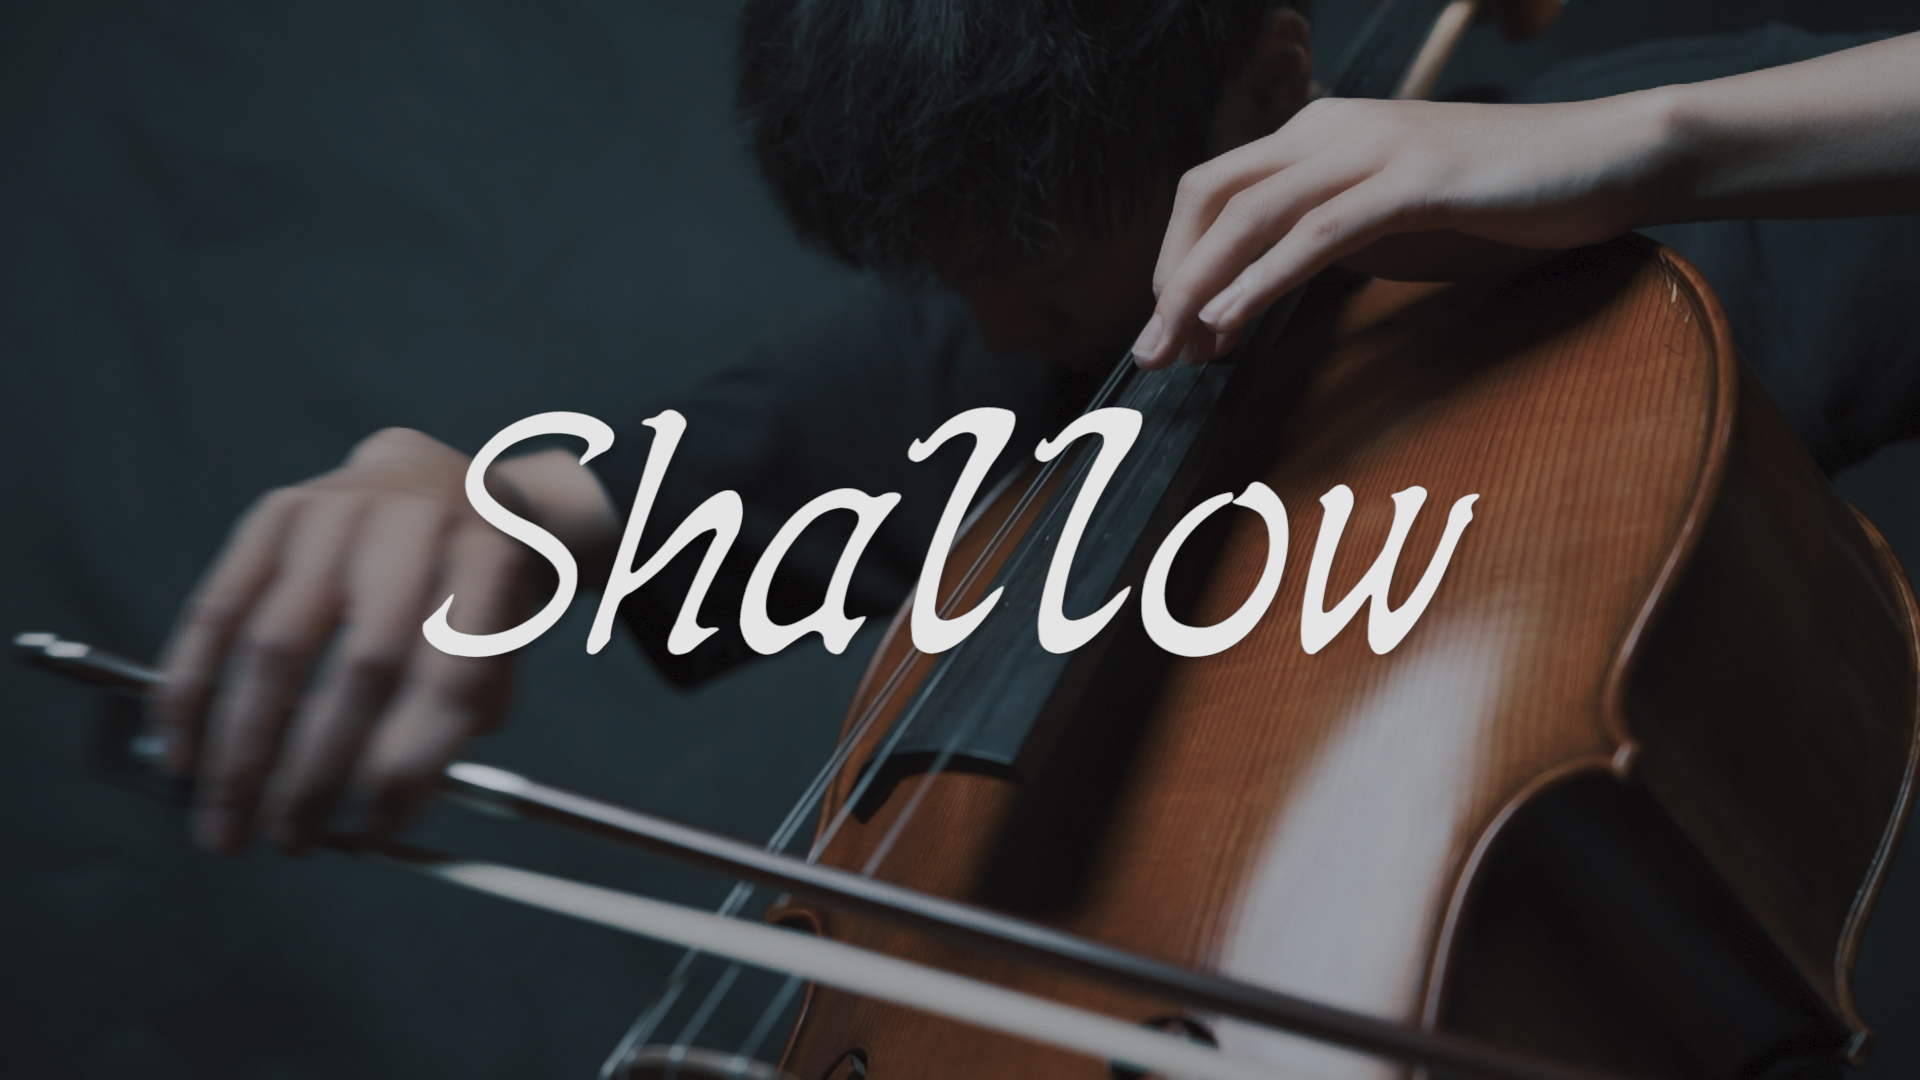 Shallow - Lady Gaga, Bradley Cooper 《擱淺帶》 (一個巨星的誕生）cello cvoer大提琴演奏 『cover by YoYo Cello』